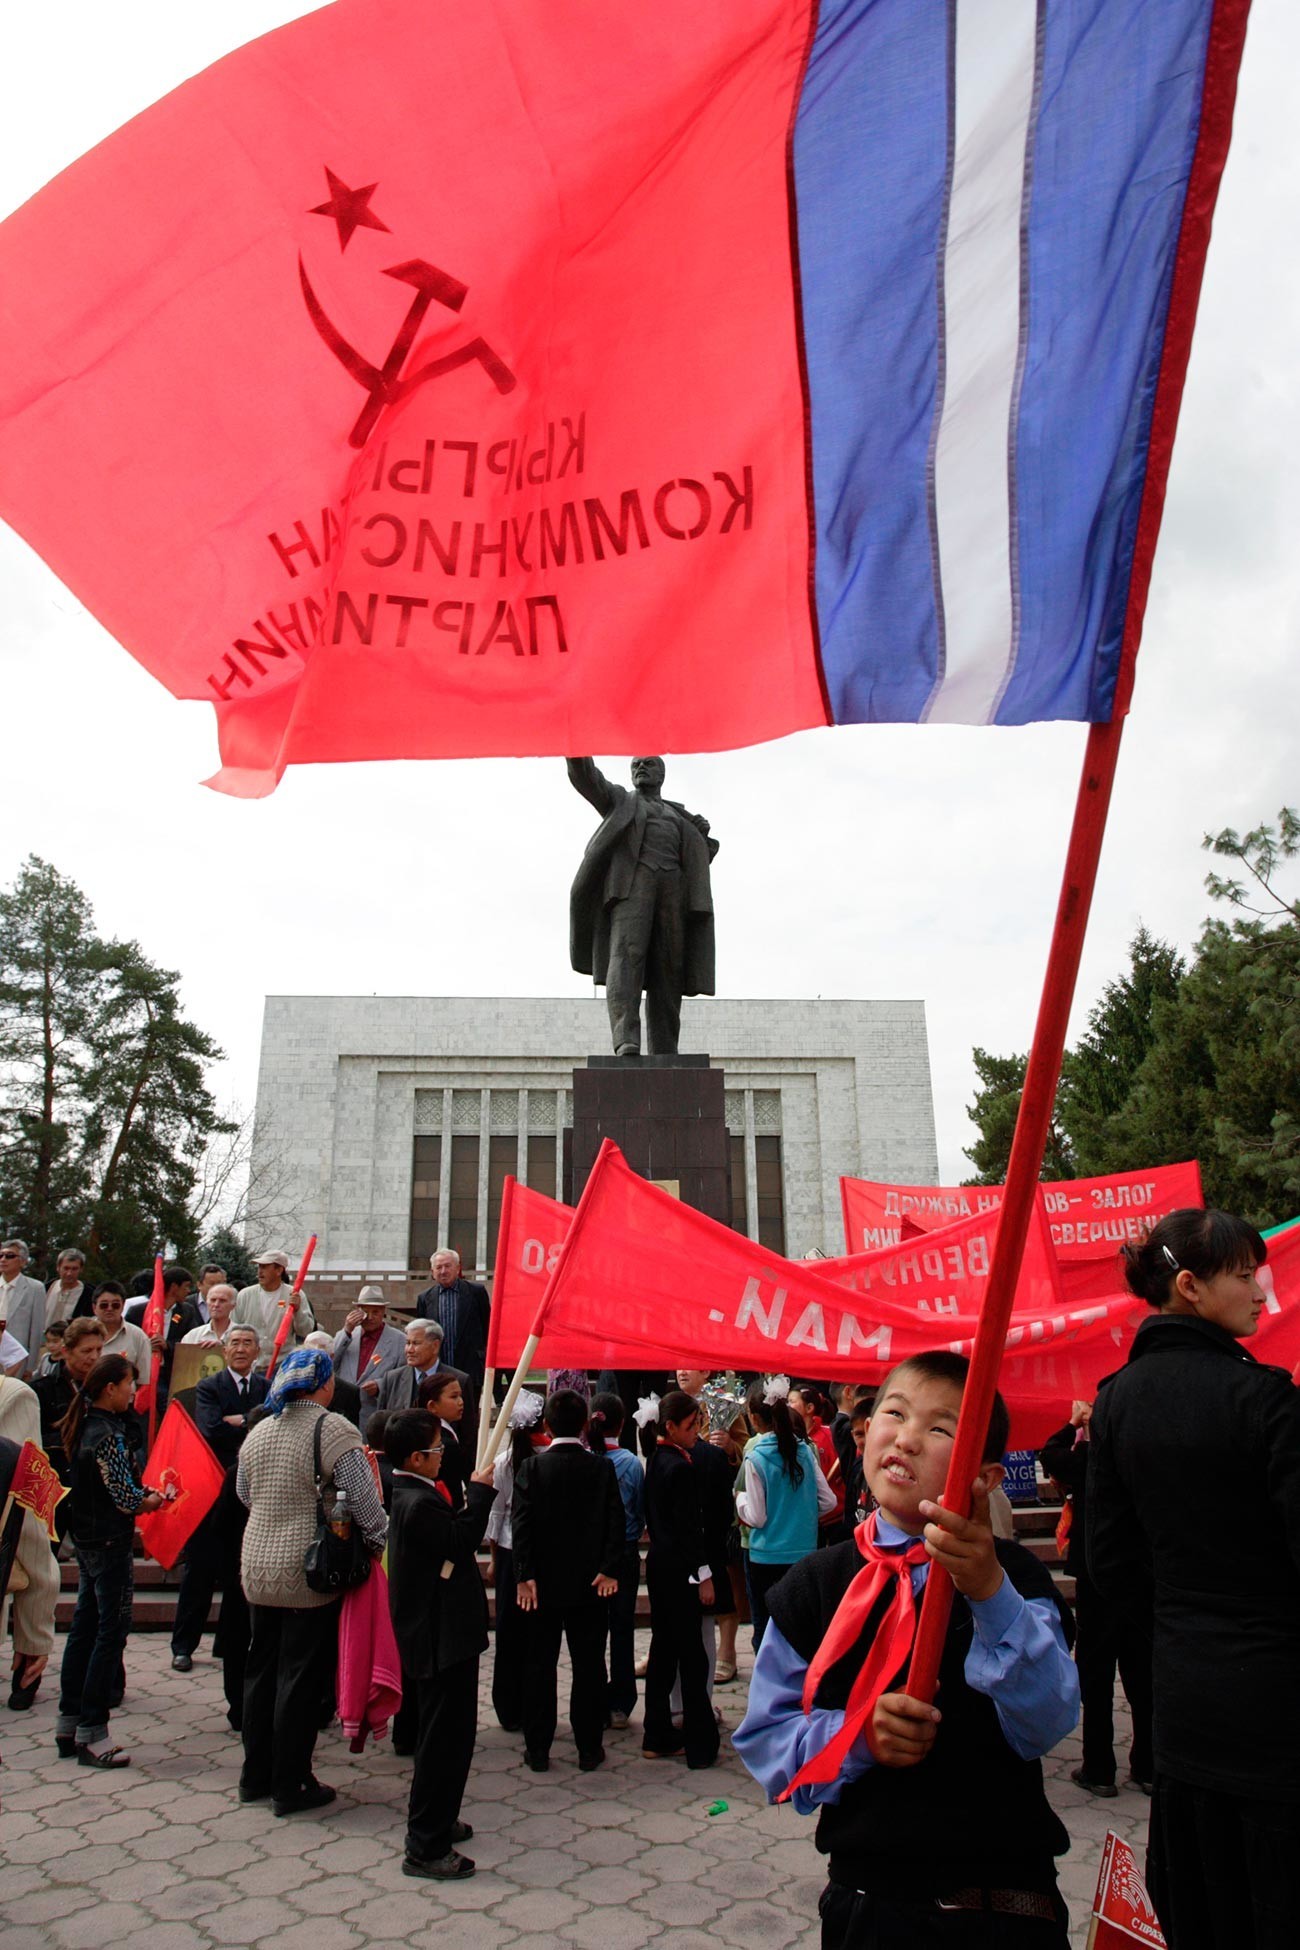 Garoto agita bandeira comunista durante manifestação que marca o Dia Internacional dos Trabalhadores em Bisqueque